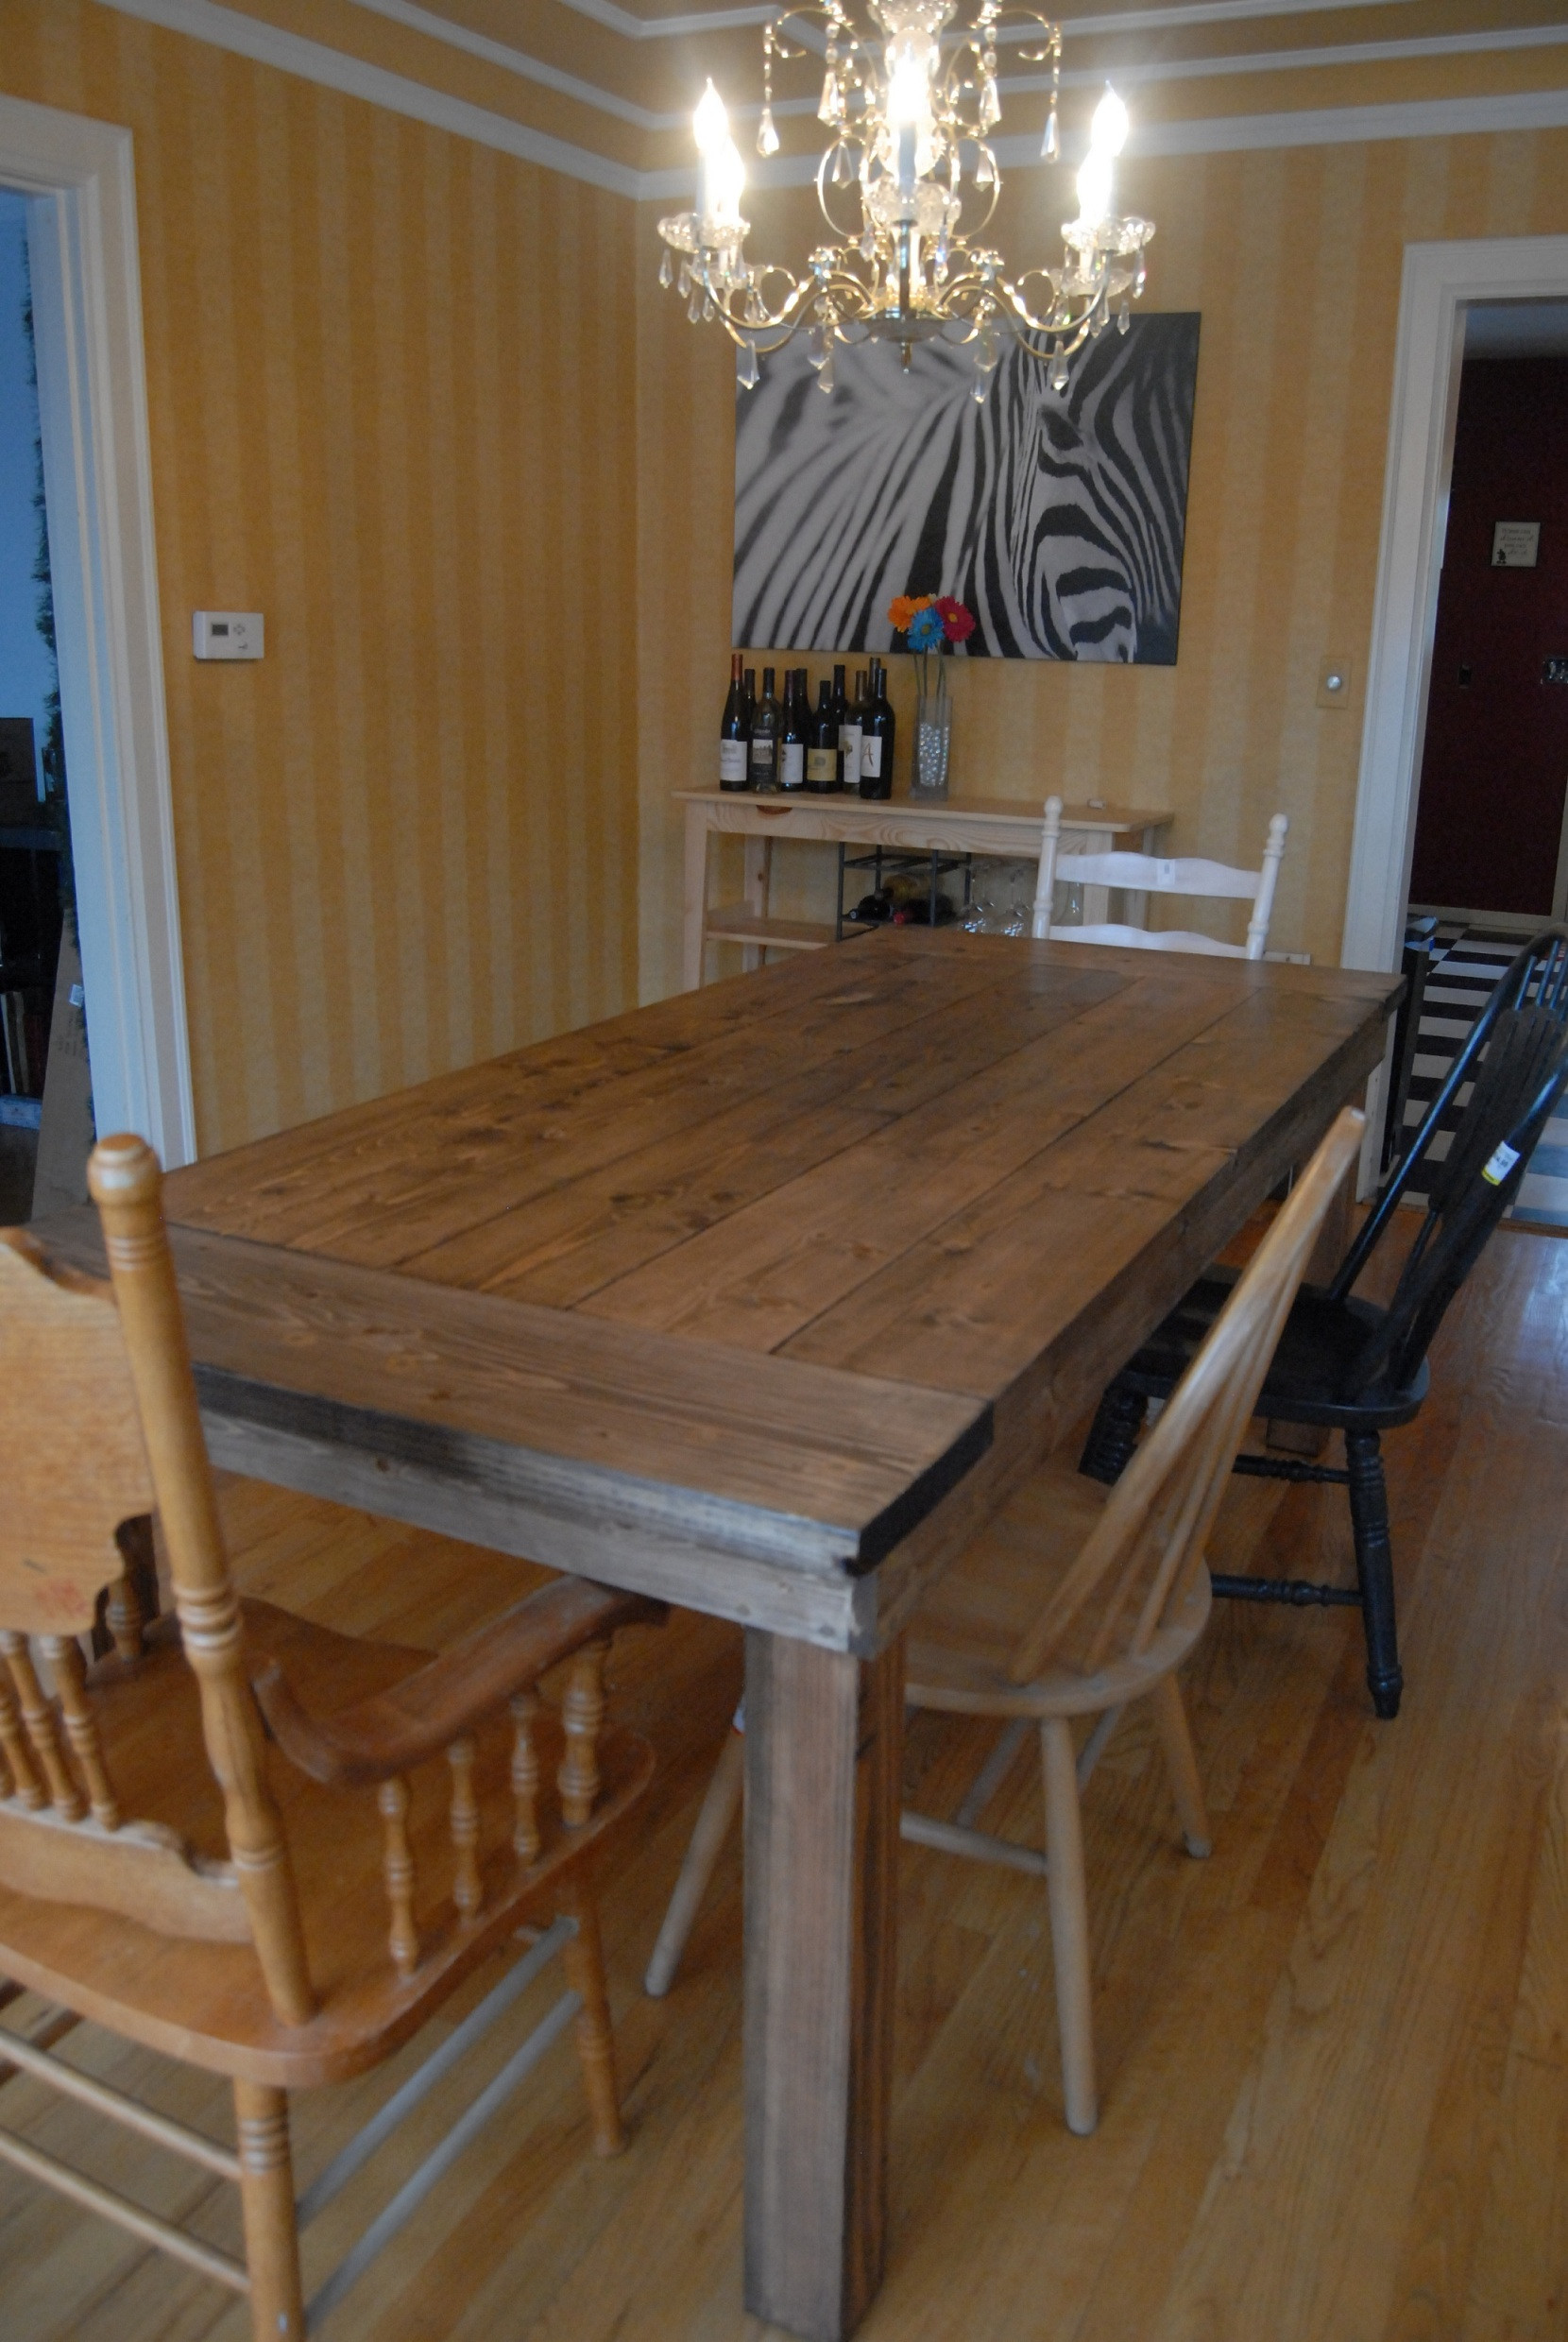 DIY Farmhouse Table Plans
 Ana White